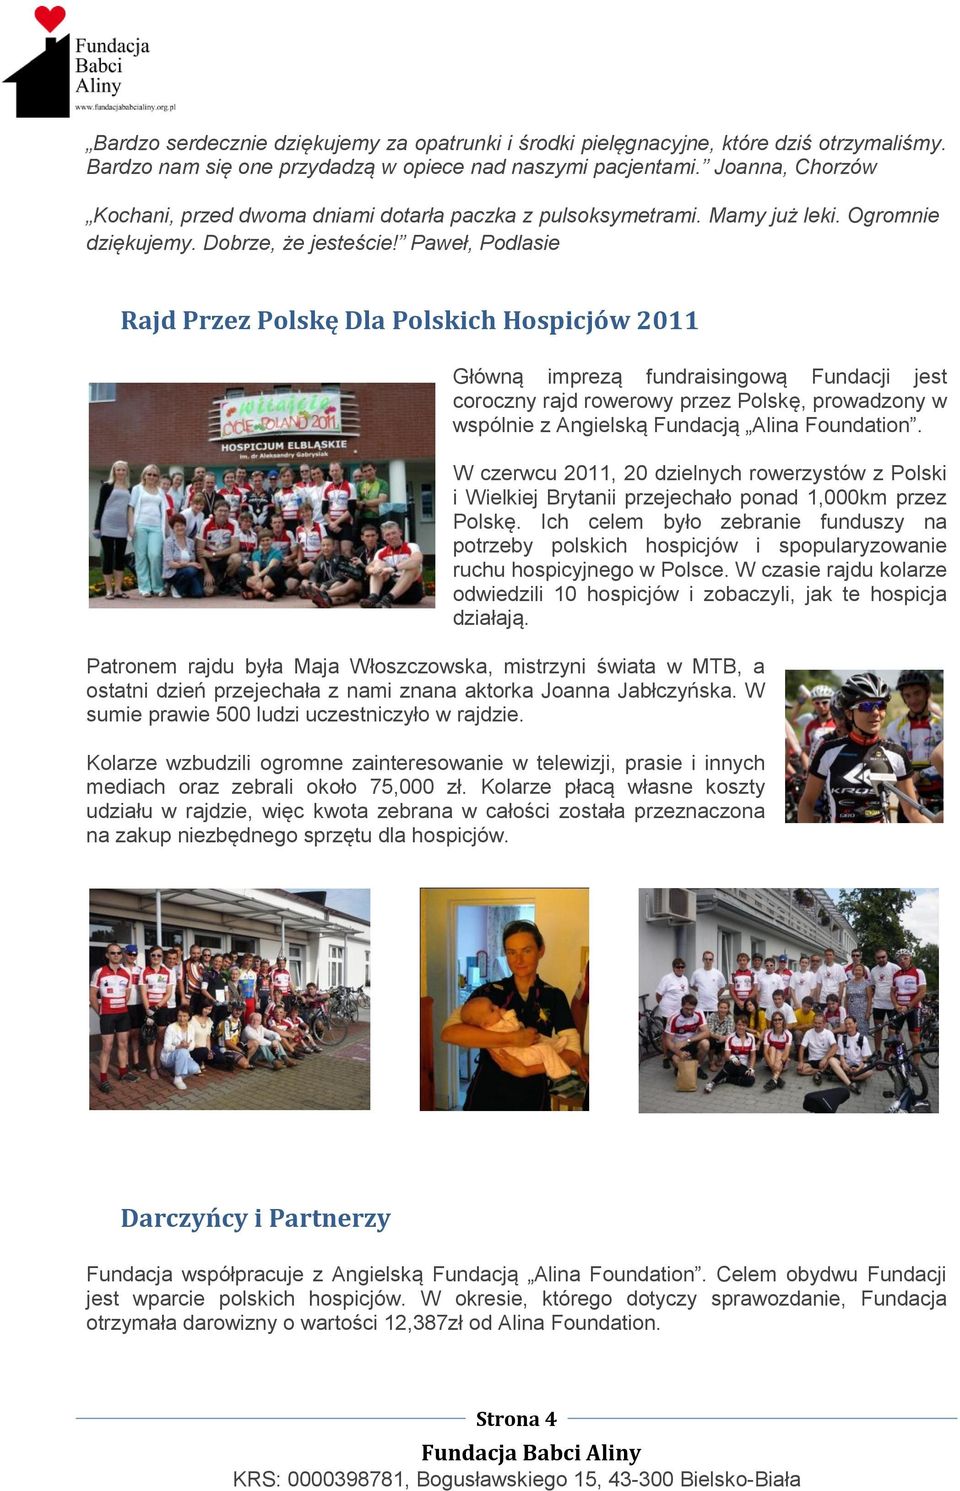 Paweł, Podlasie Rajd Przez Polskę Dla Polskich Hospicjów 2011 Główną imprezą fundraisingową Fundacji jest coroczny rajd rowerowy przez Polskę, prowadzony w wspólnie z Angielską Fundacją Alina